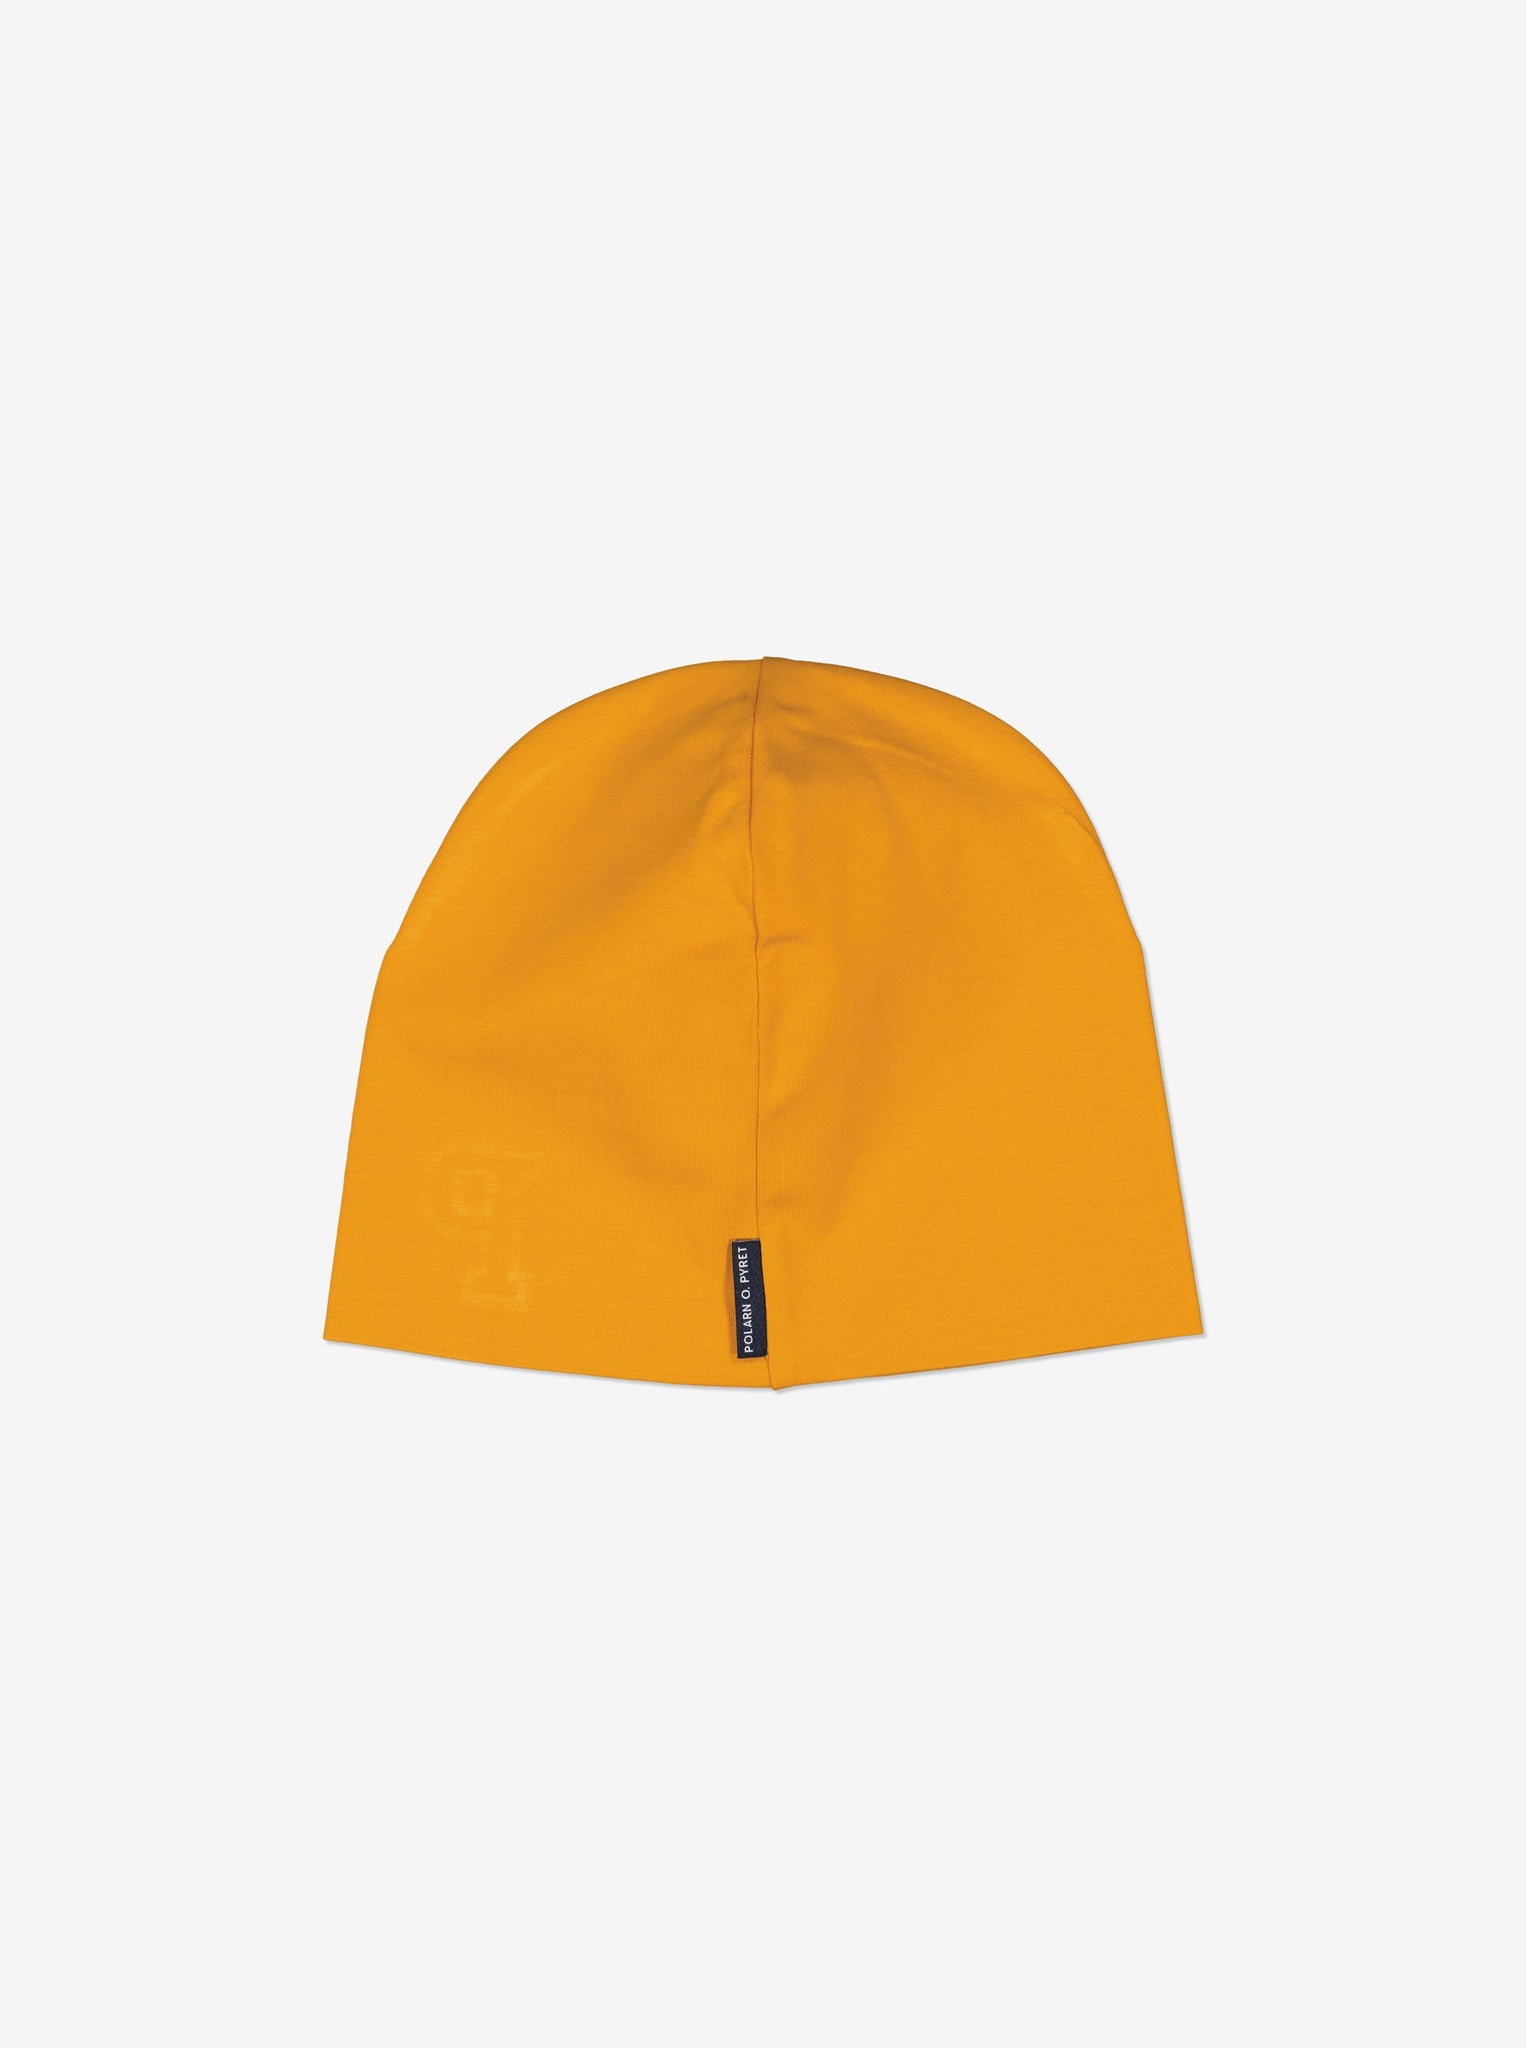 Yellow Kids Beanie Hat from Polarn O. Pyret Kidswear. Warm kids beanie